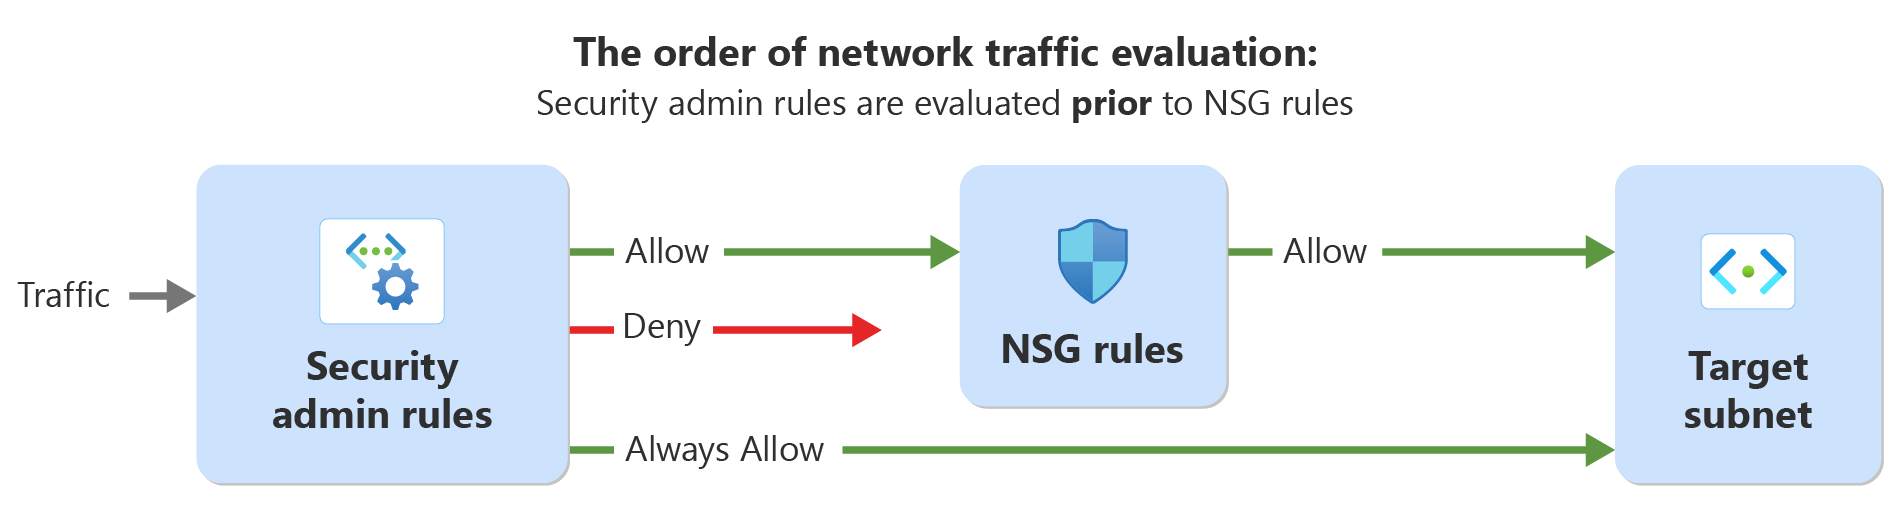 Diagrama mostrando a ordem de avaliação do tráfego de rede com regras de administração de segurança e regras de segurança de rede.